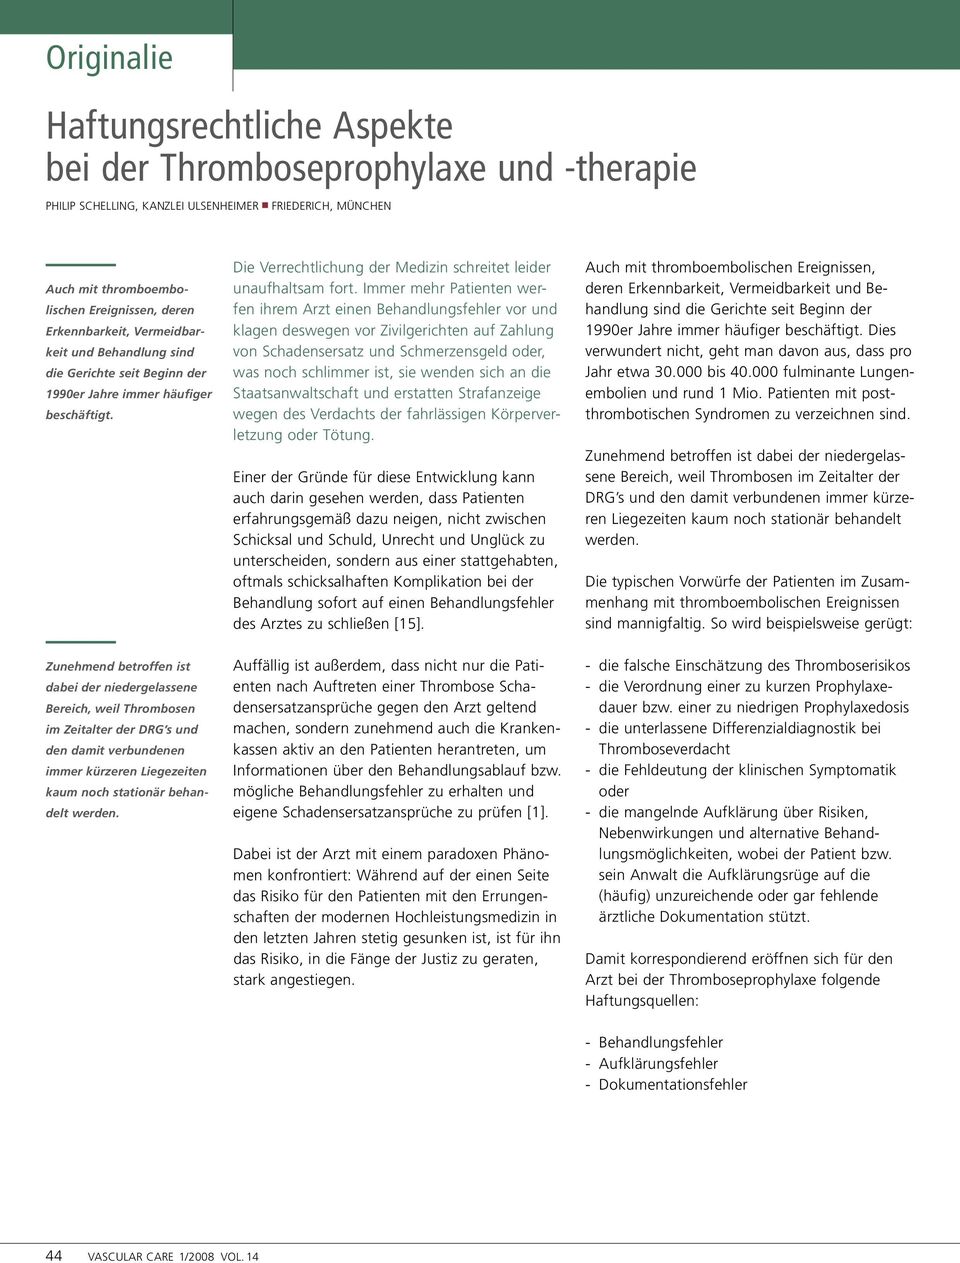 Zunehmend betroffen ist dabei der niedergelassene Bereich, weil Thrombosen im Zeitalter der DRG s und den damit verbundenen immer kürzeren Liegezeiten kaum noch stationär behandelt werden.